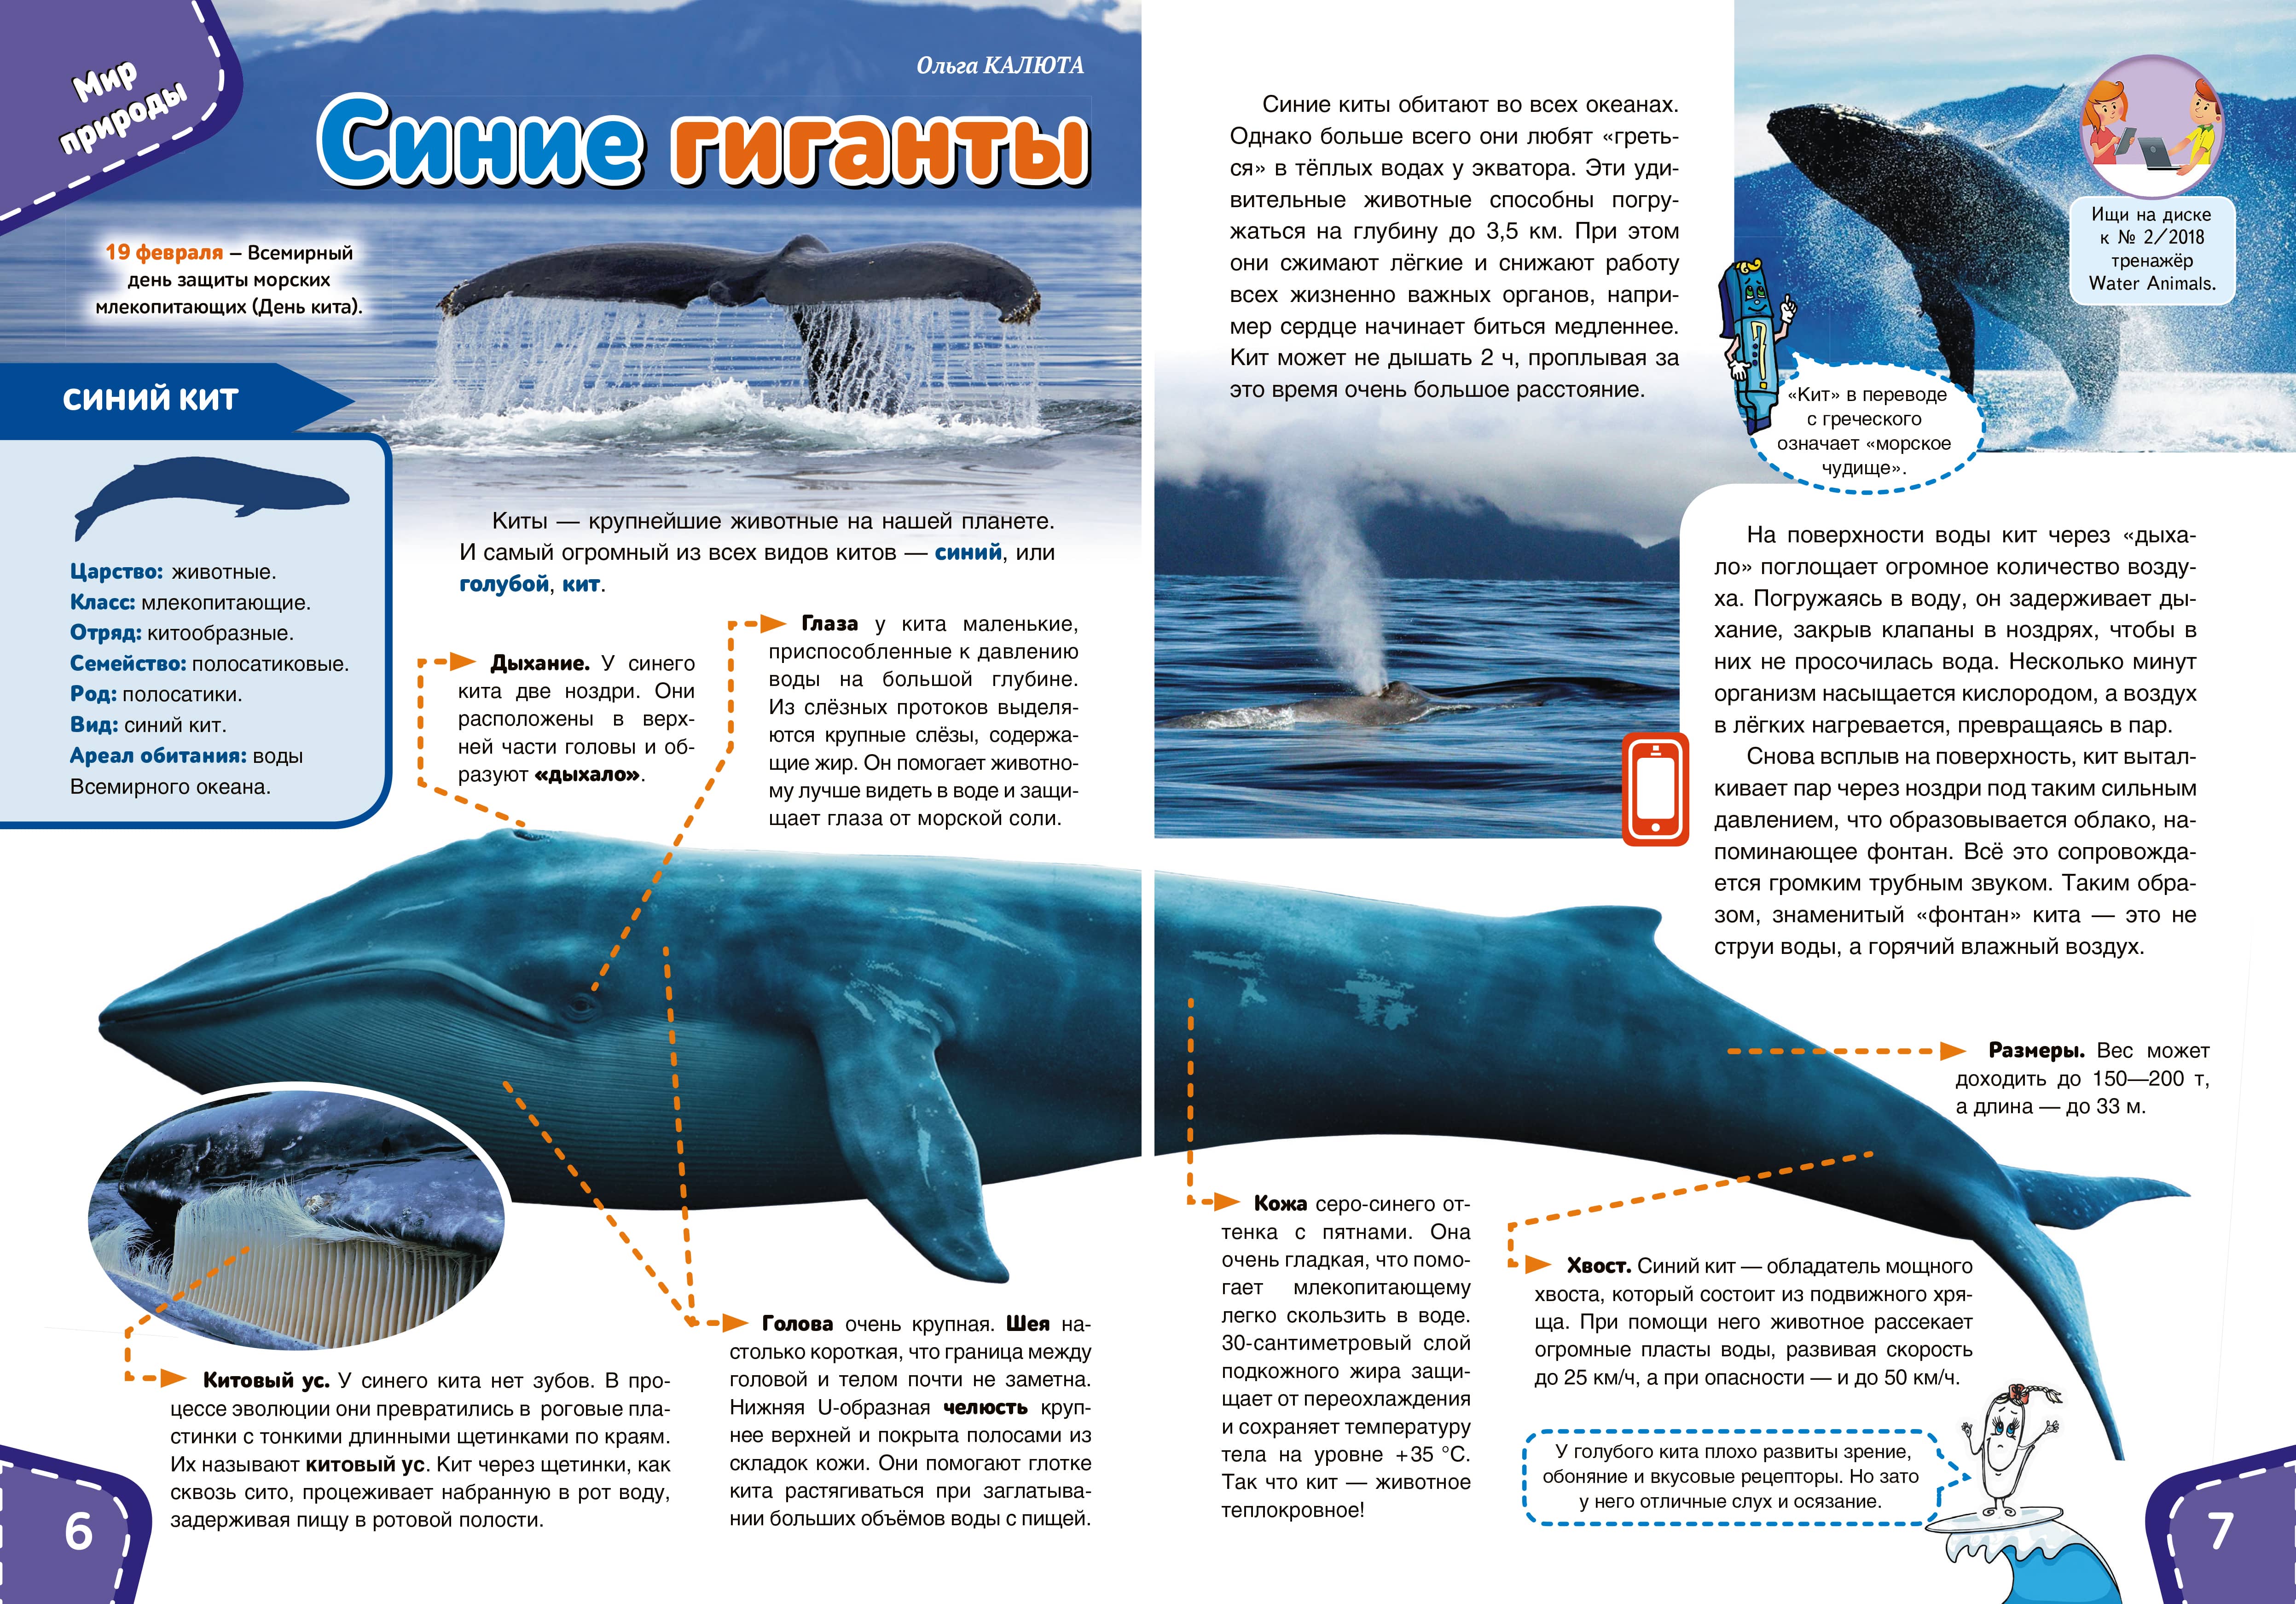 Синий кит Размеры